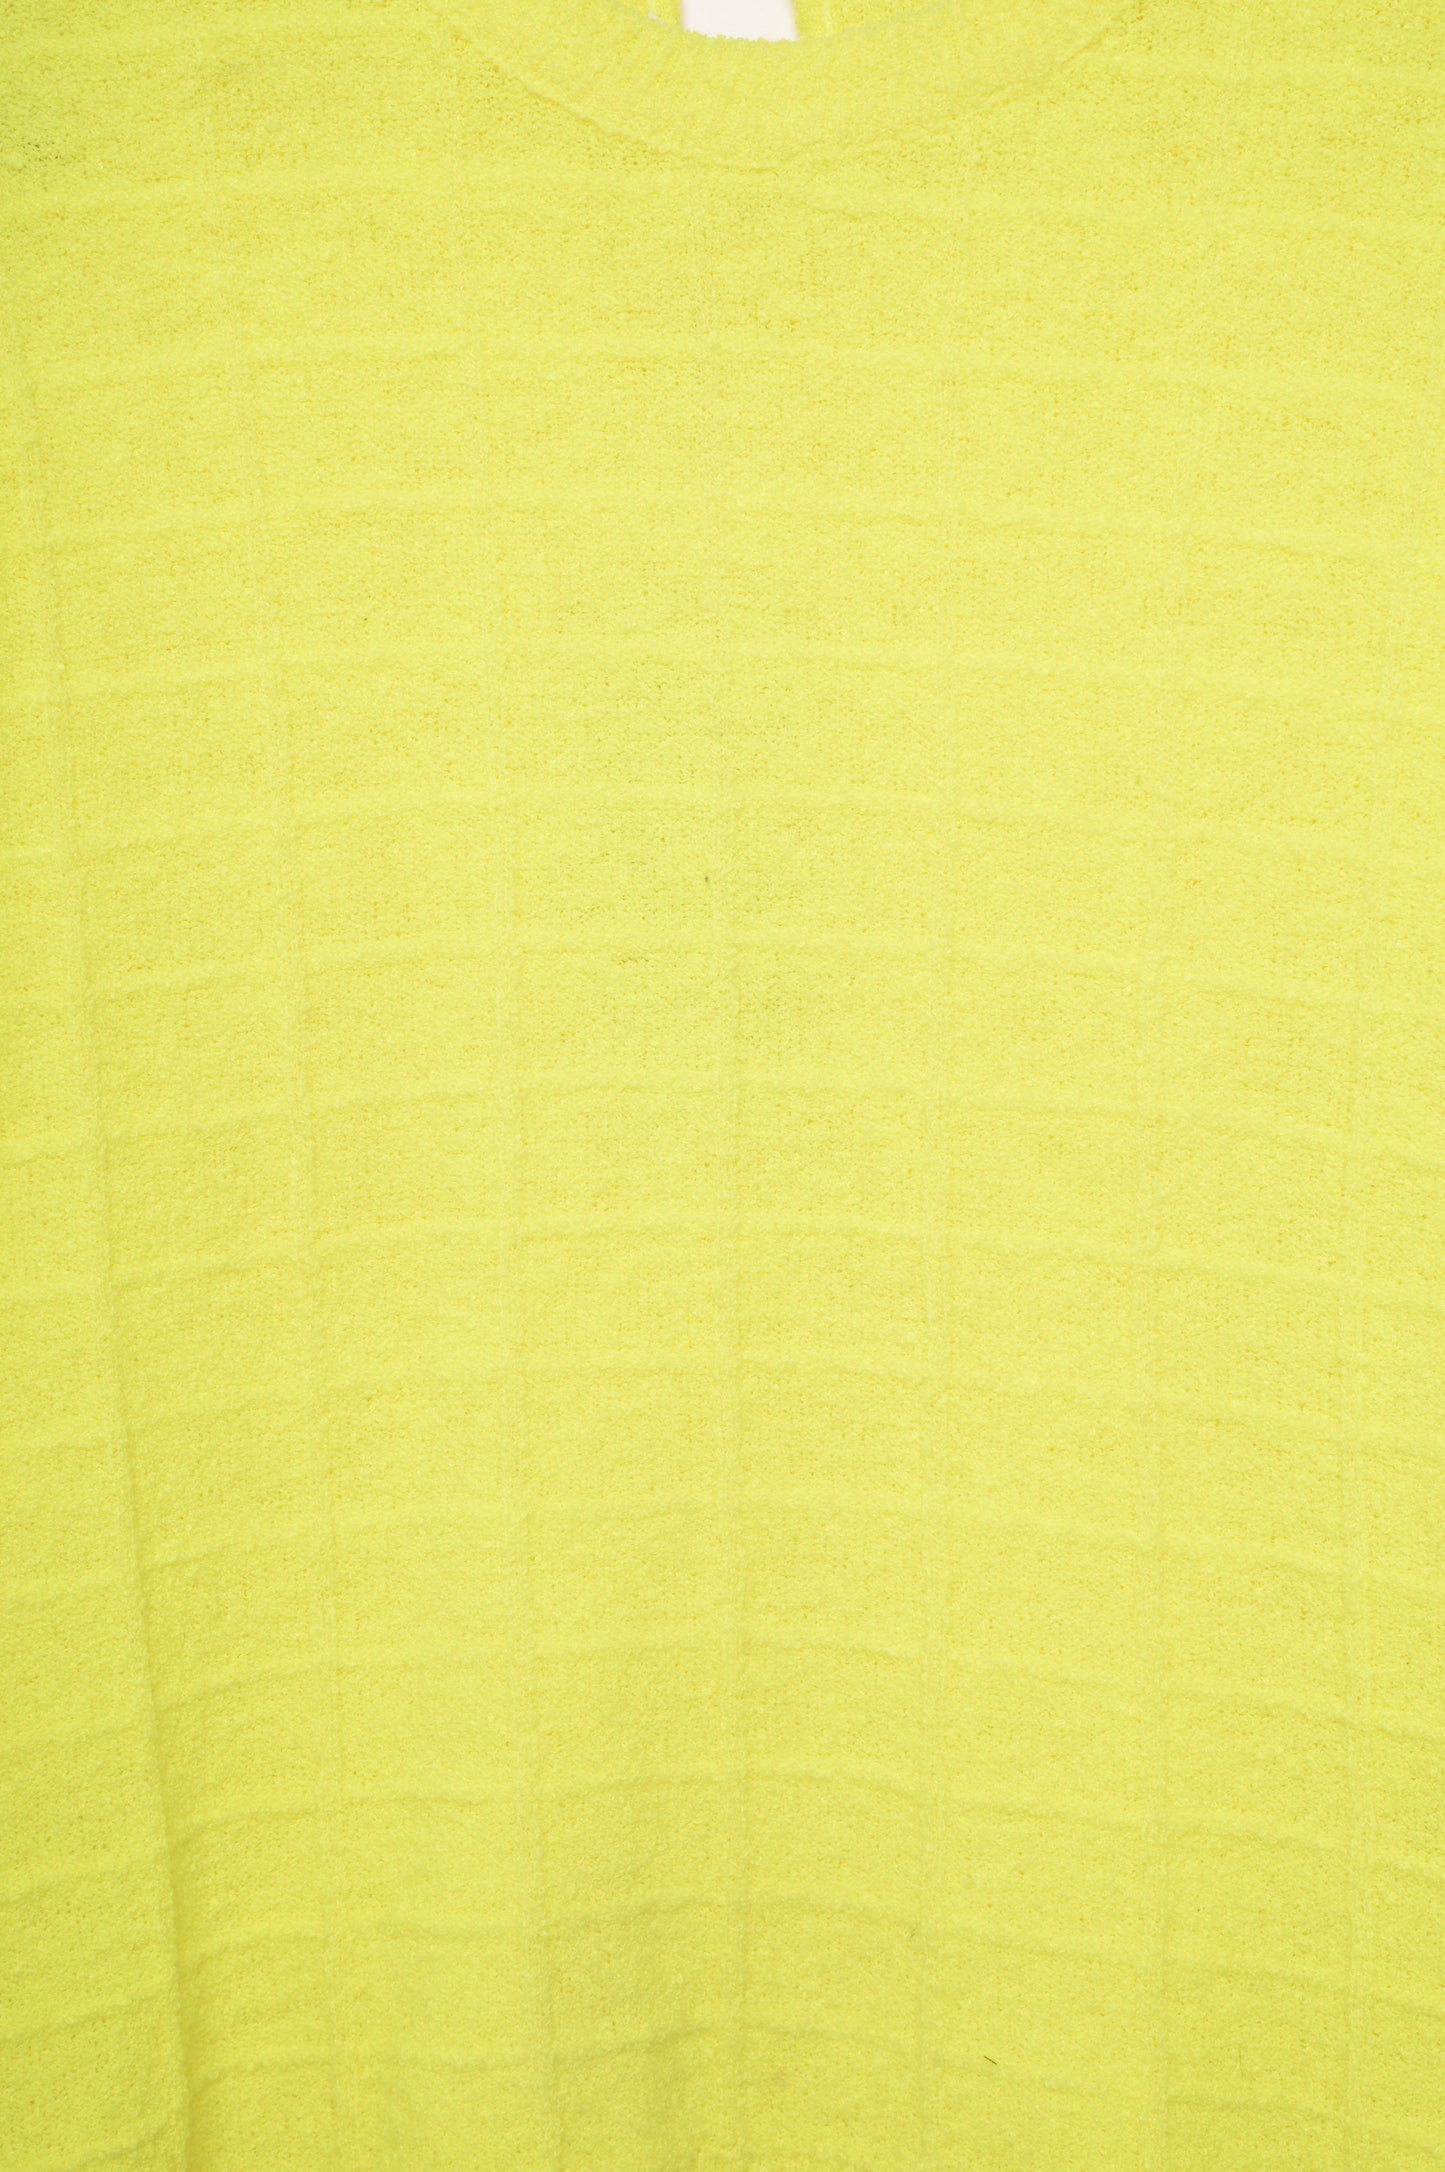 1960s Textured Lemon Yellow Sweater